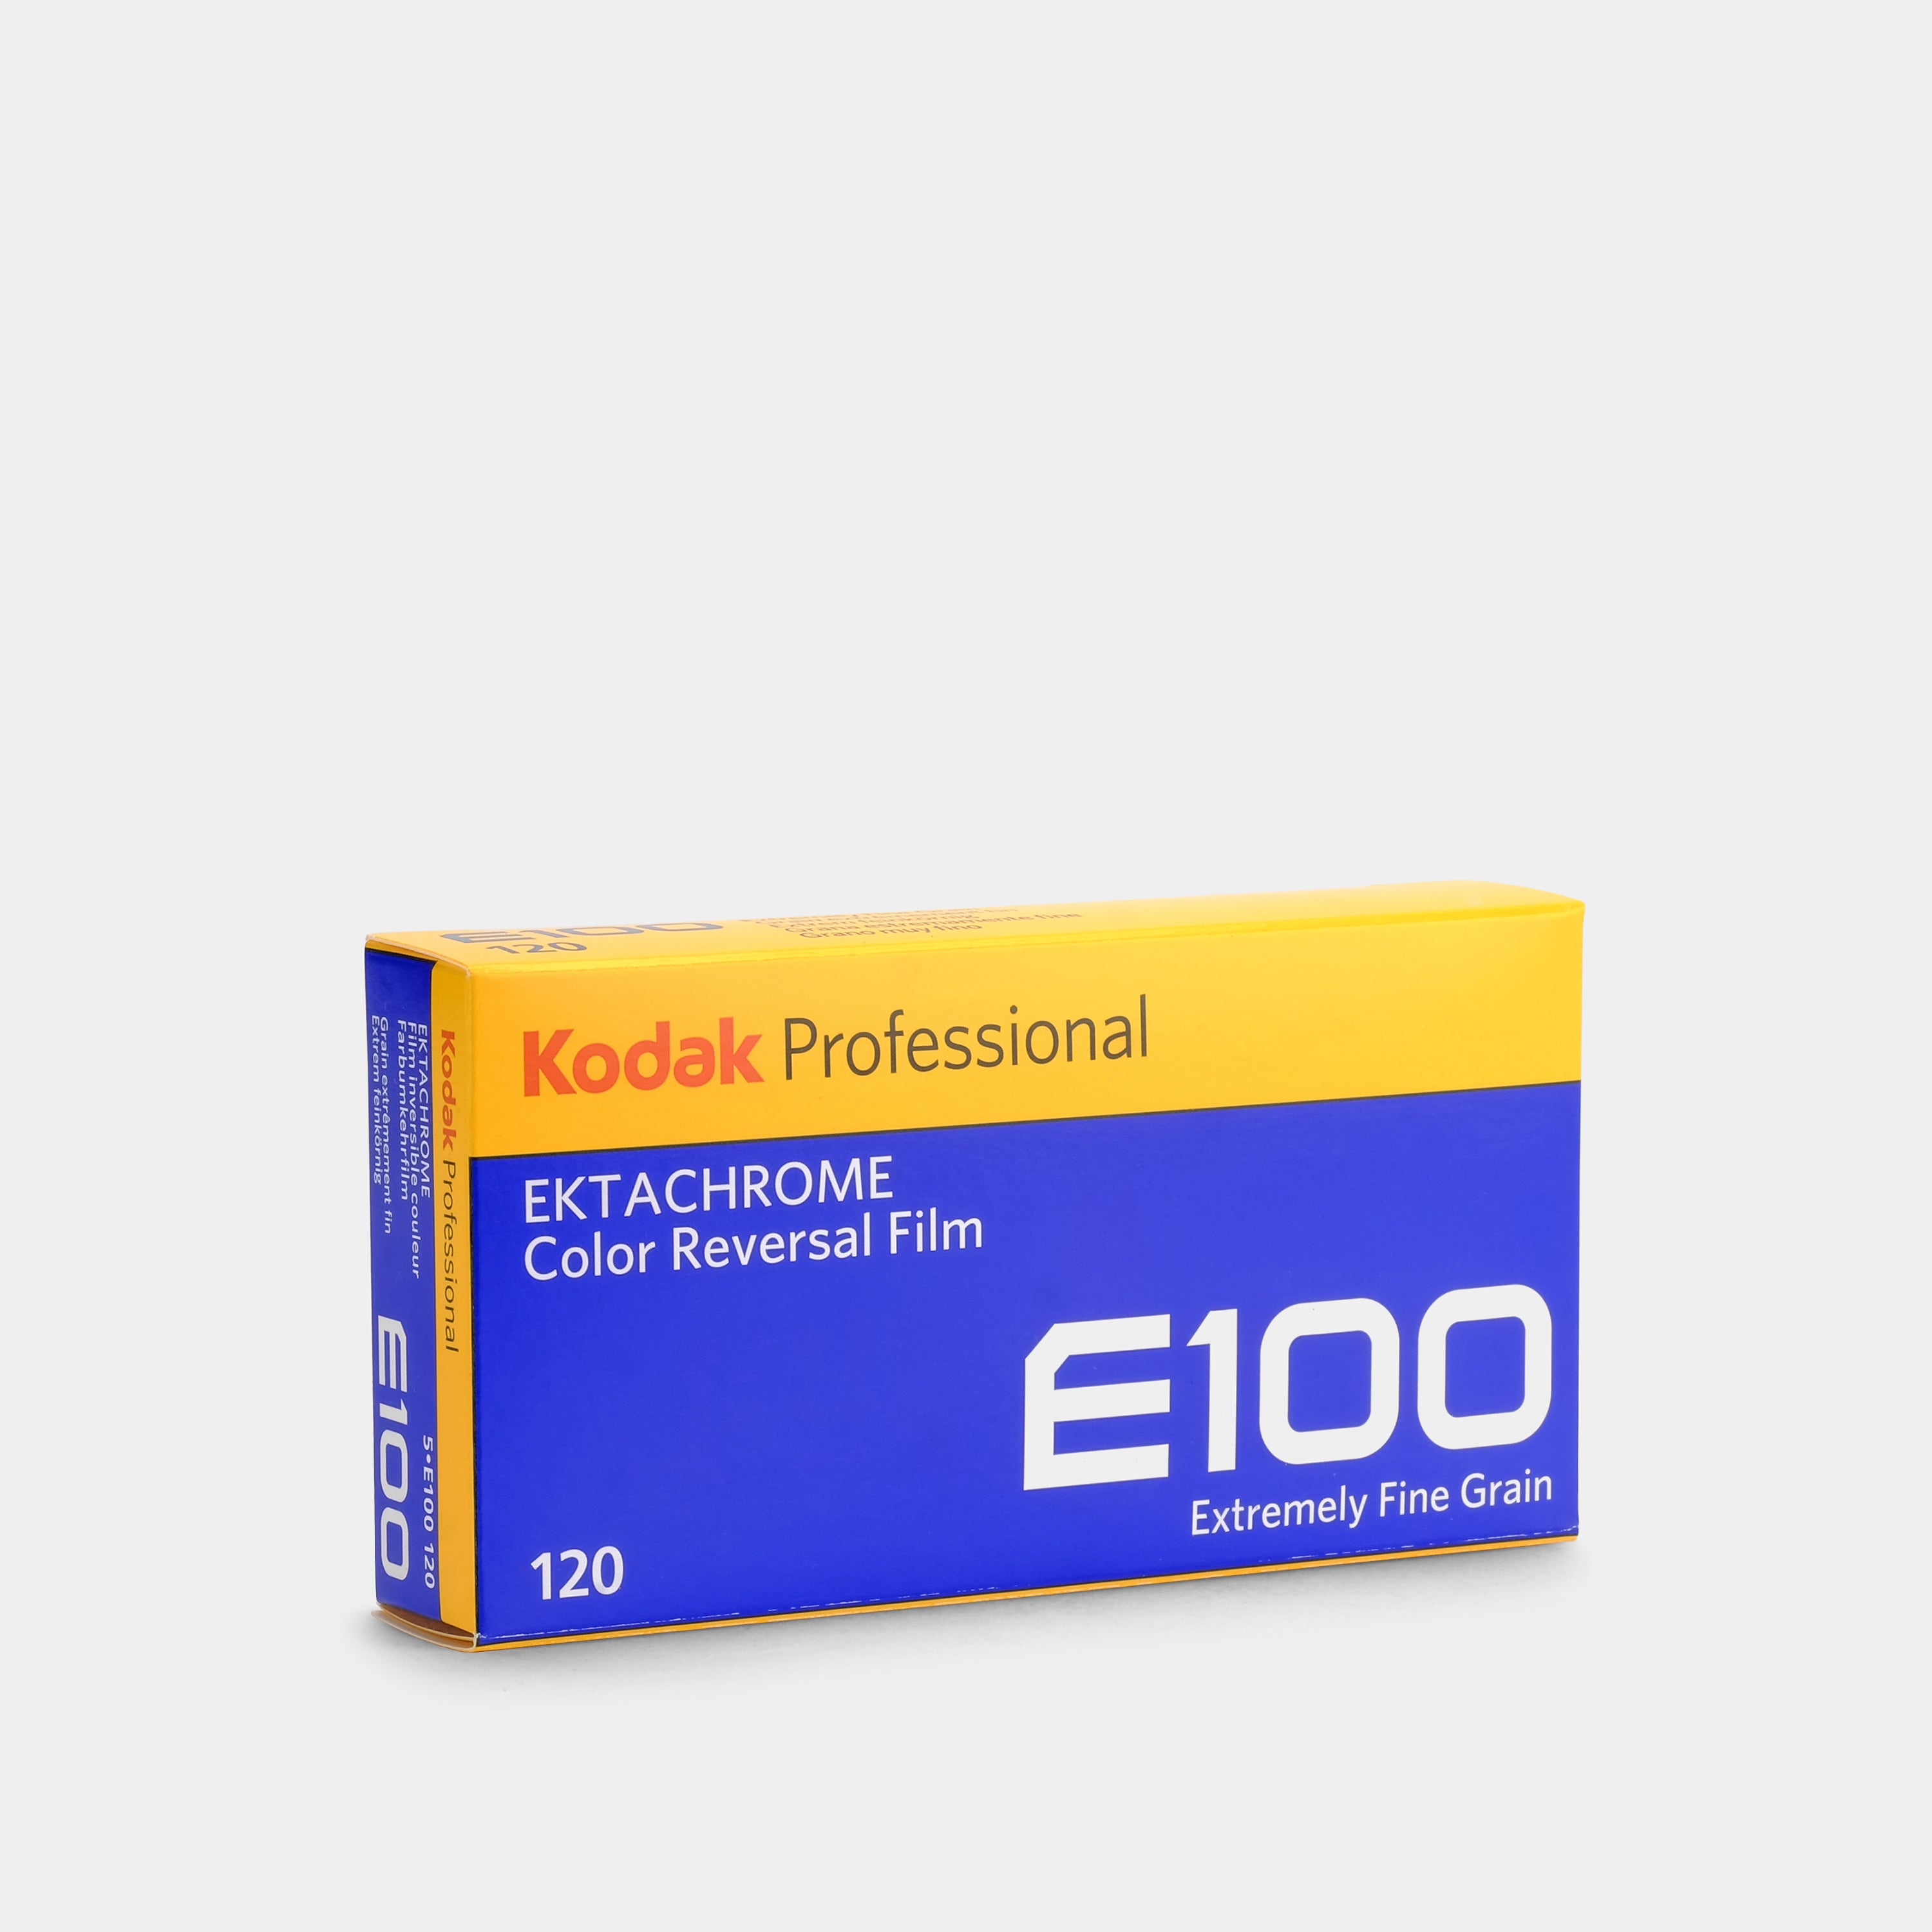 Kodak Professional Ektachrome E100 Color Reversal Slide 120 Film - 5 Pack